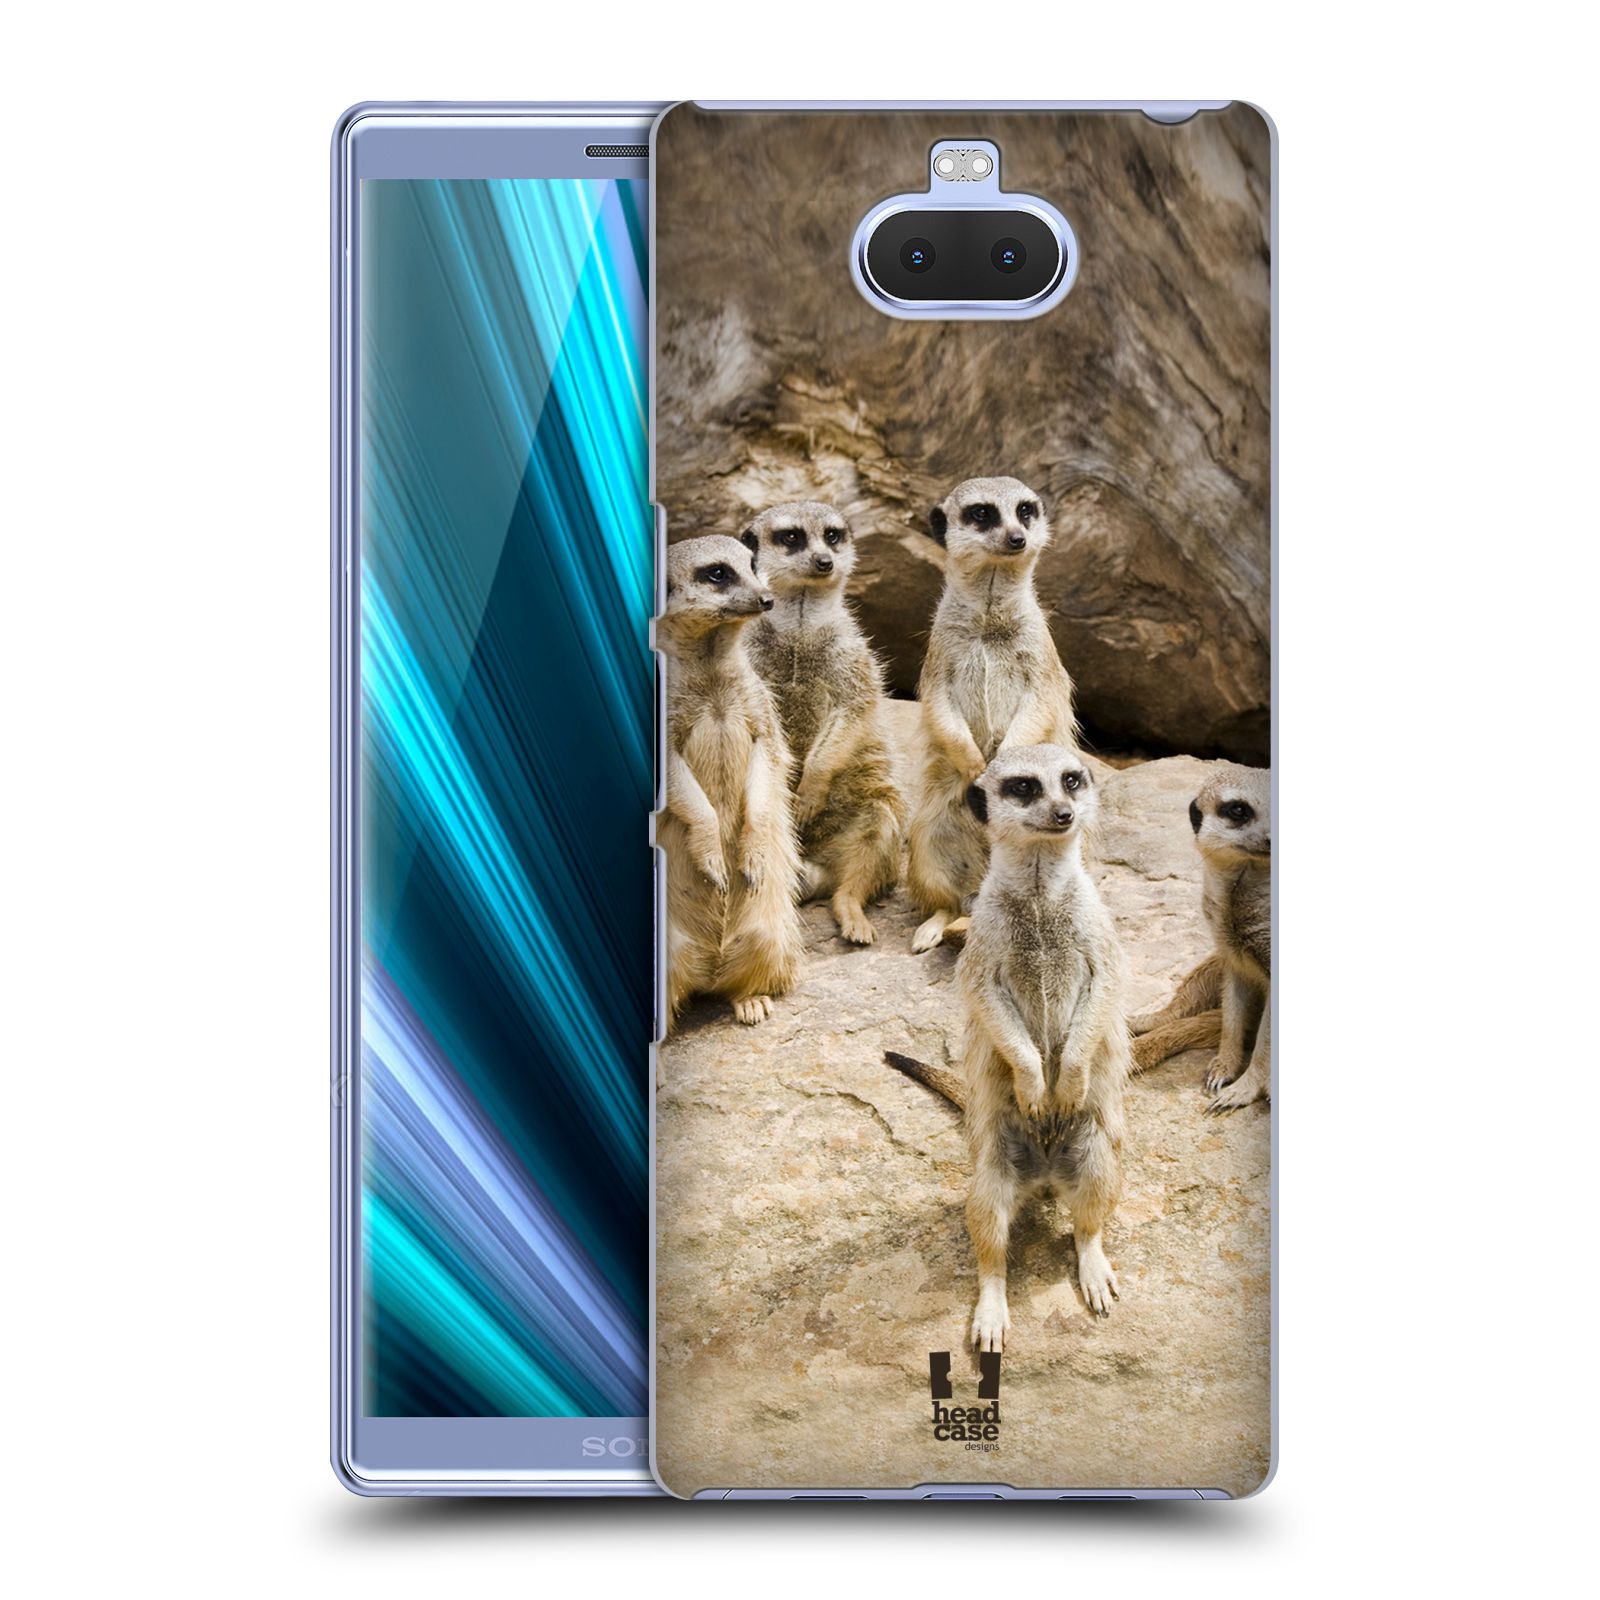 Zadní obal pro mobil Sony Xperia 10 - HEAD CASE - Svět zvířat roztomilé surikaty